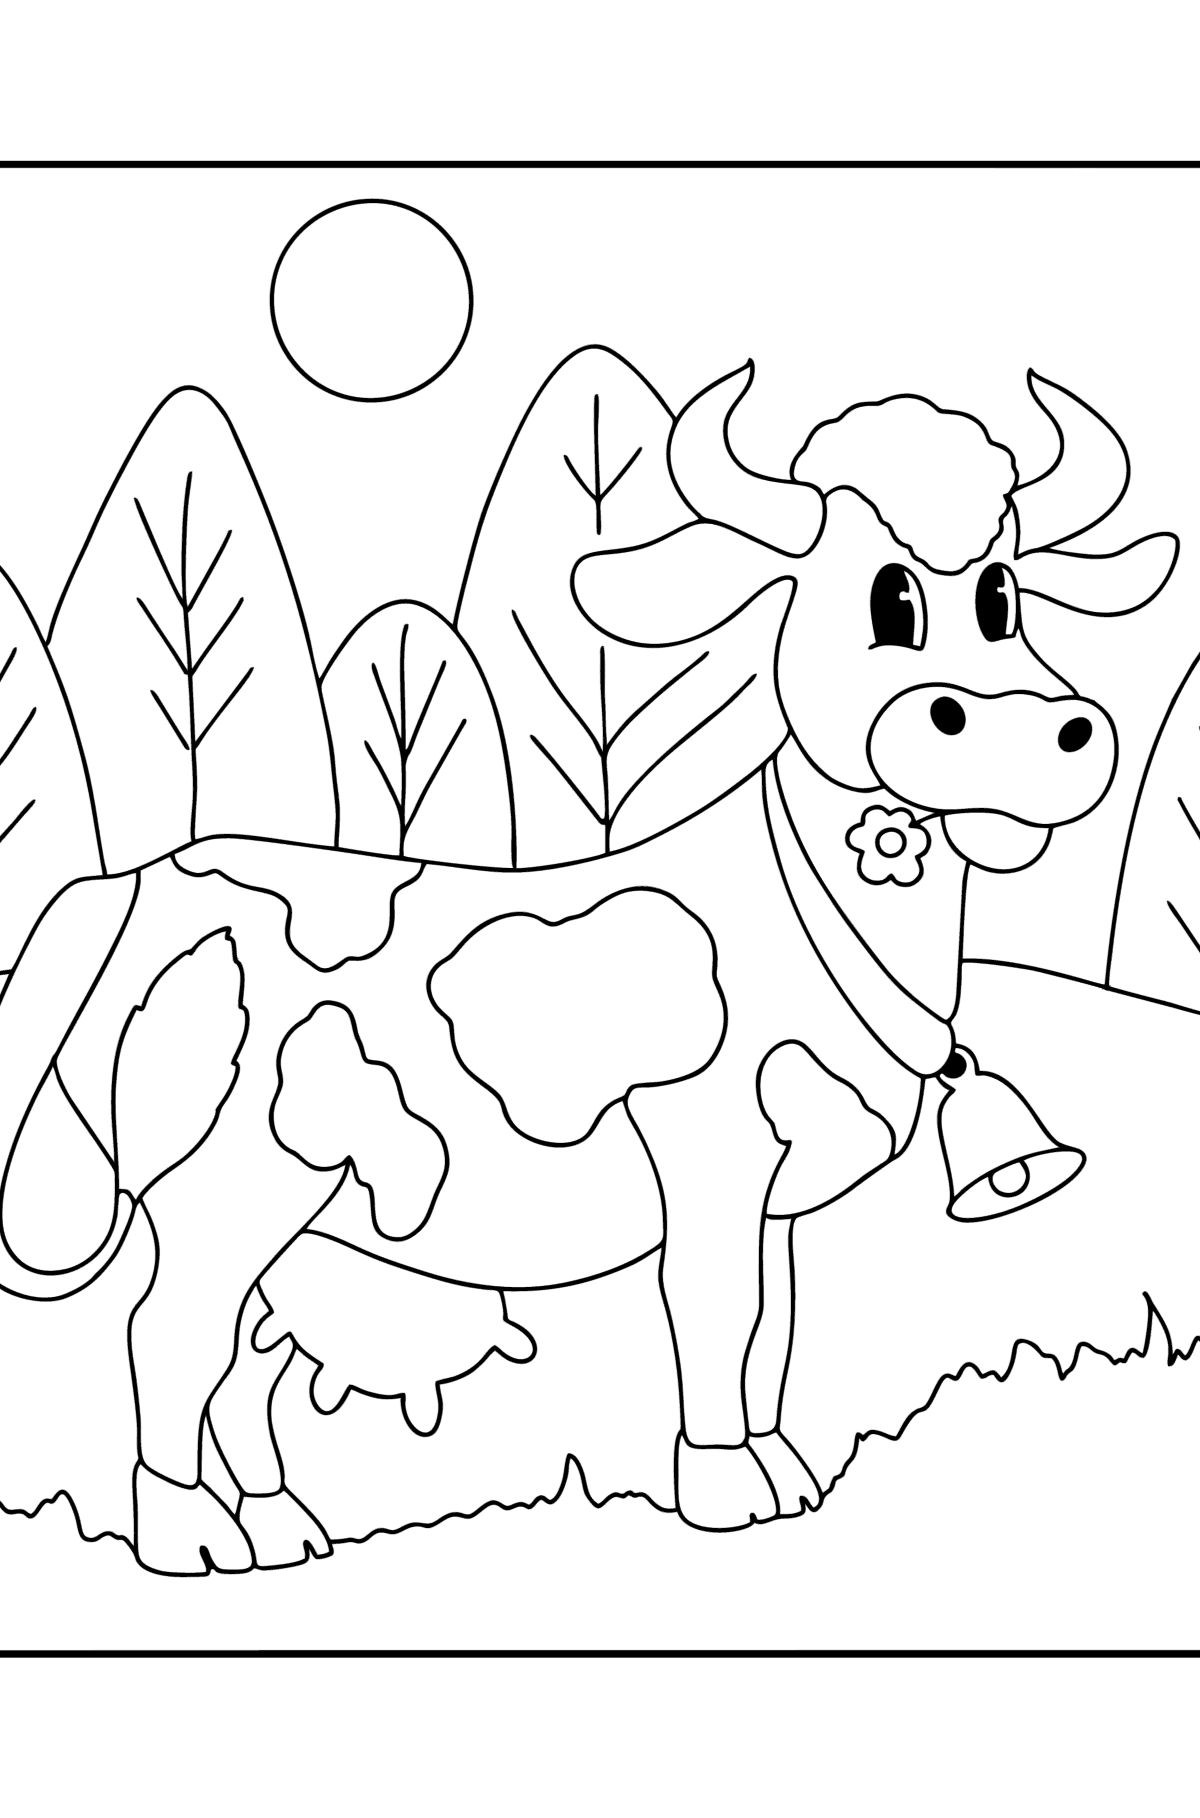 Розмальовка малюнок корови для малюків - Розмальовки для дітей